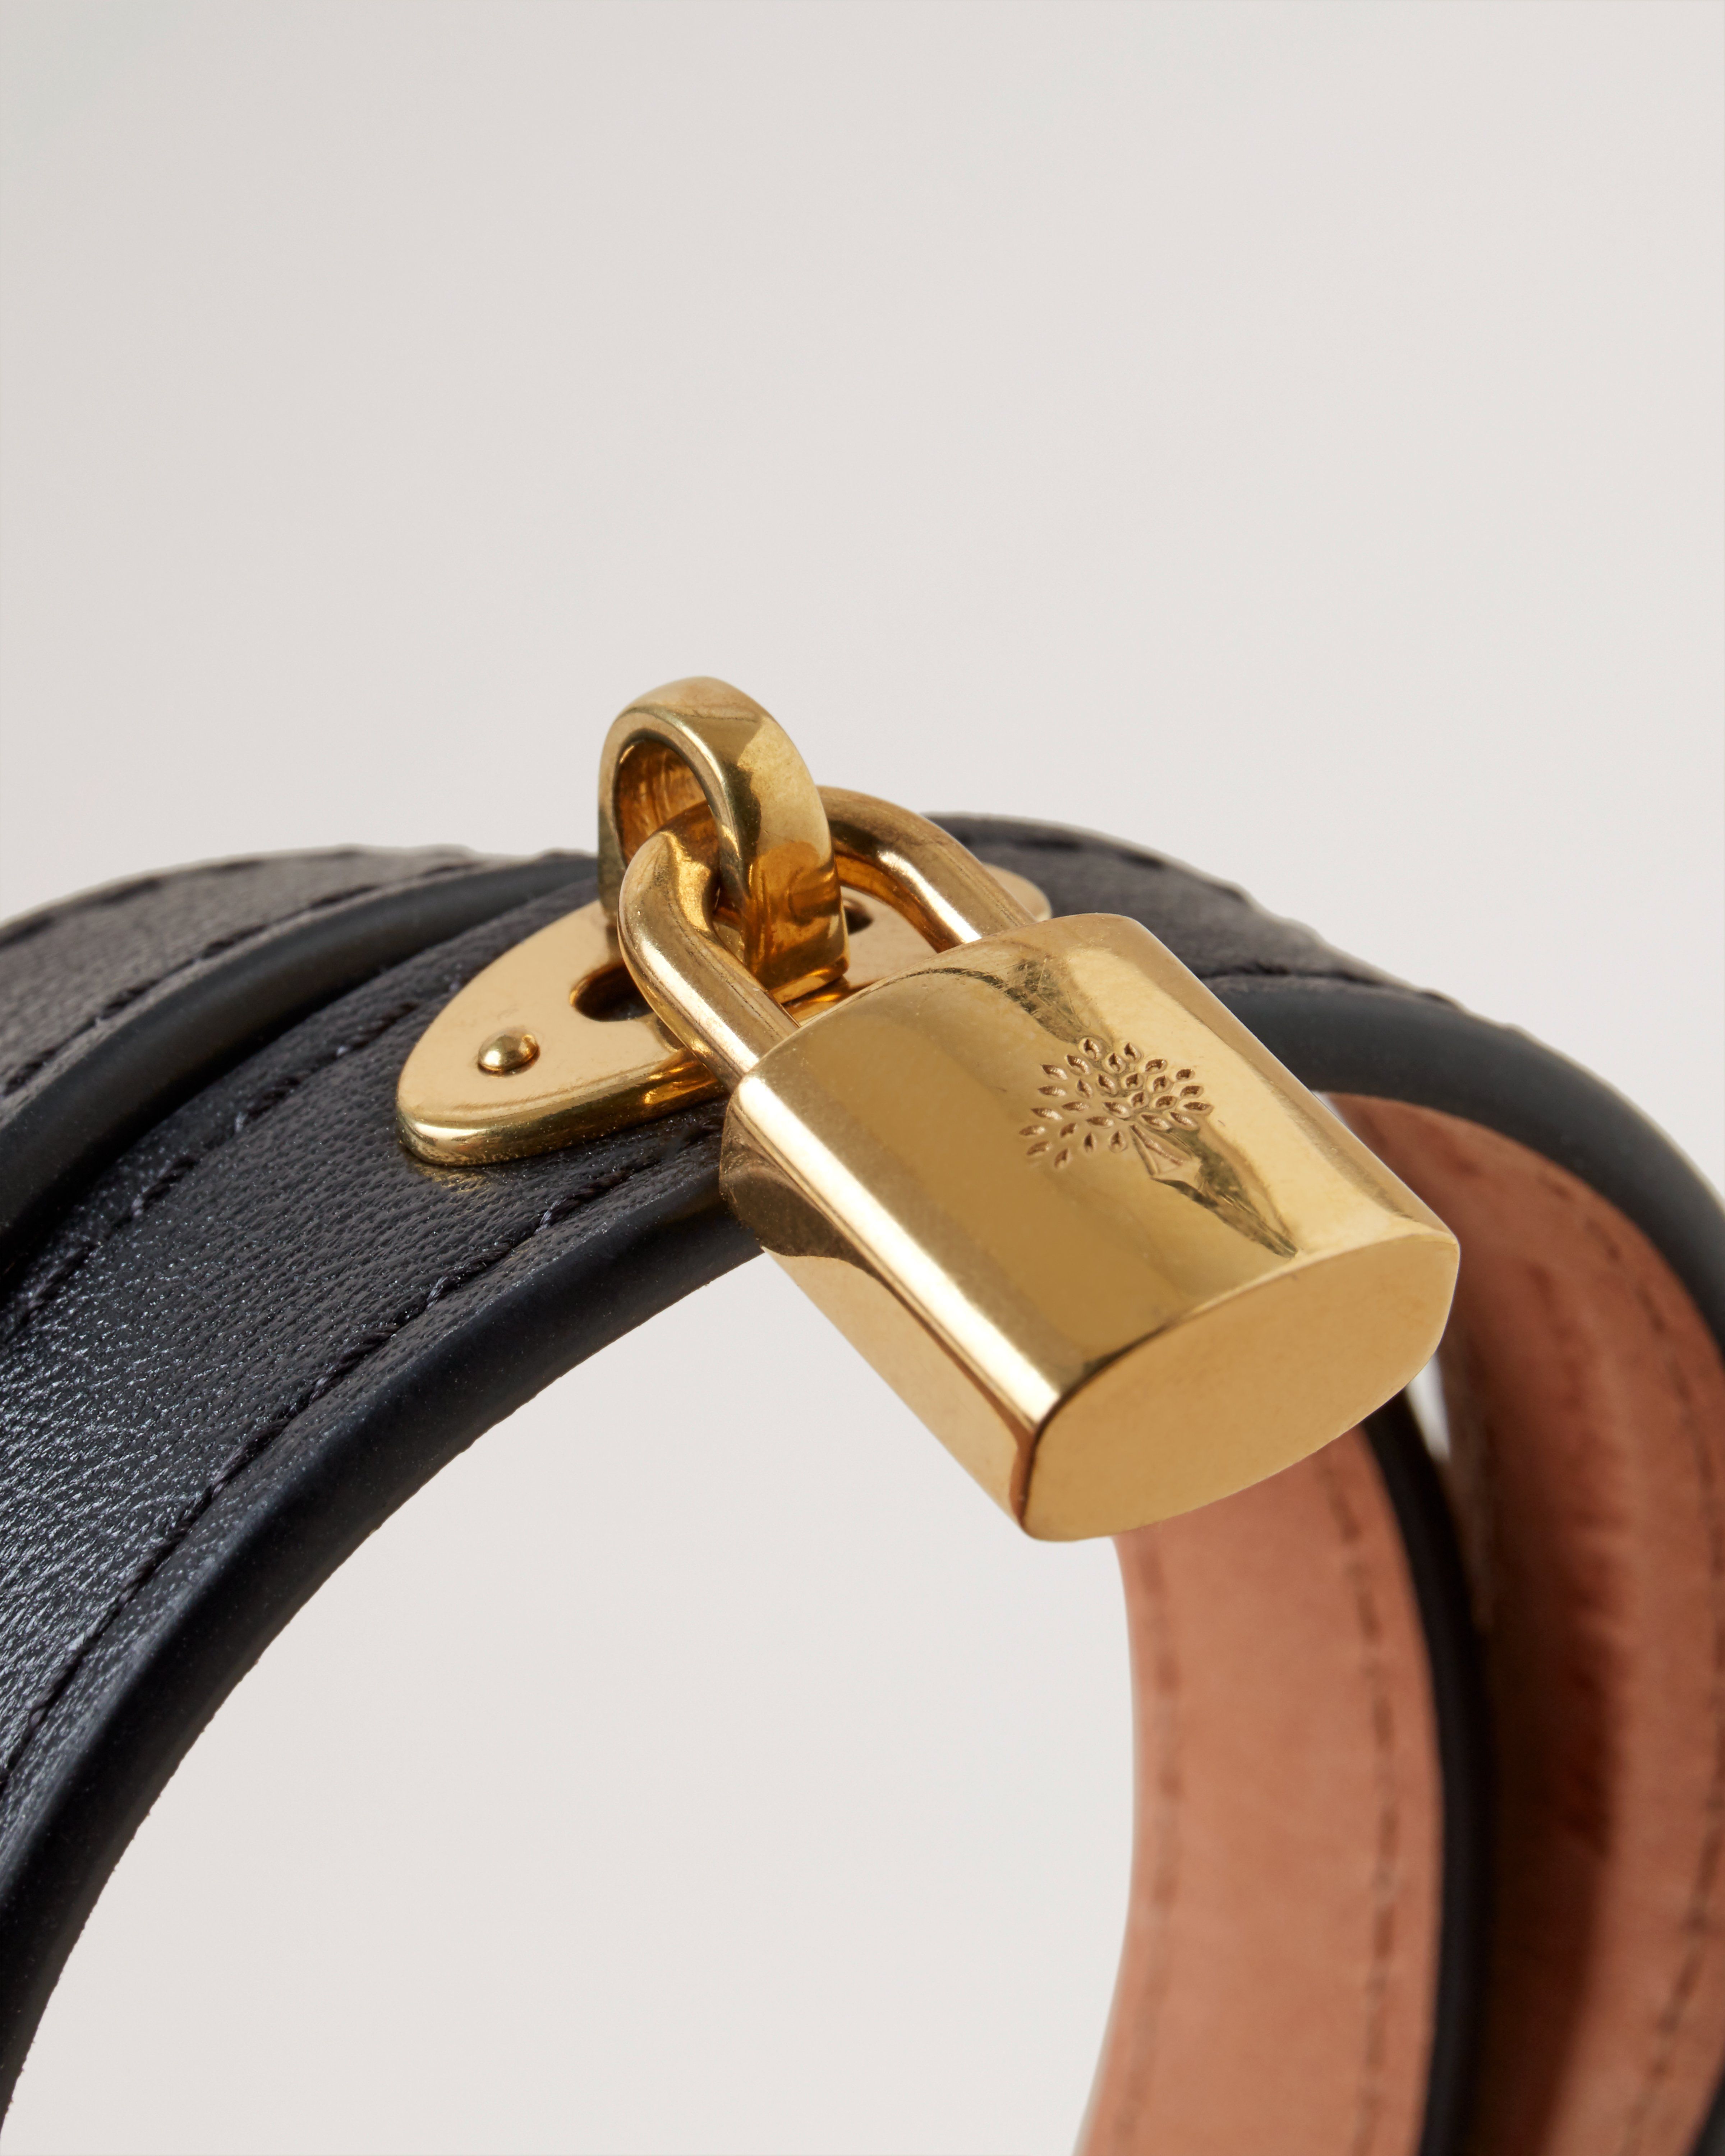 Louis Vuitton Gold Tone Sign It Damier Ebene Leather Bracelet